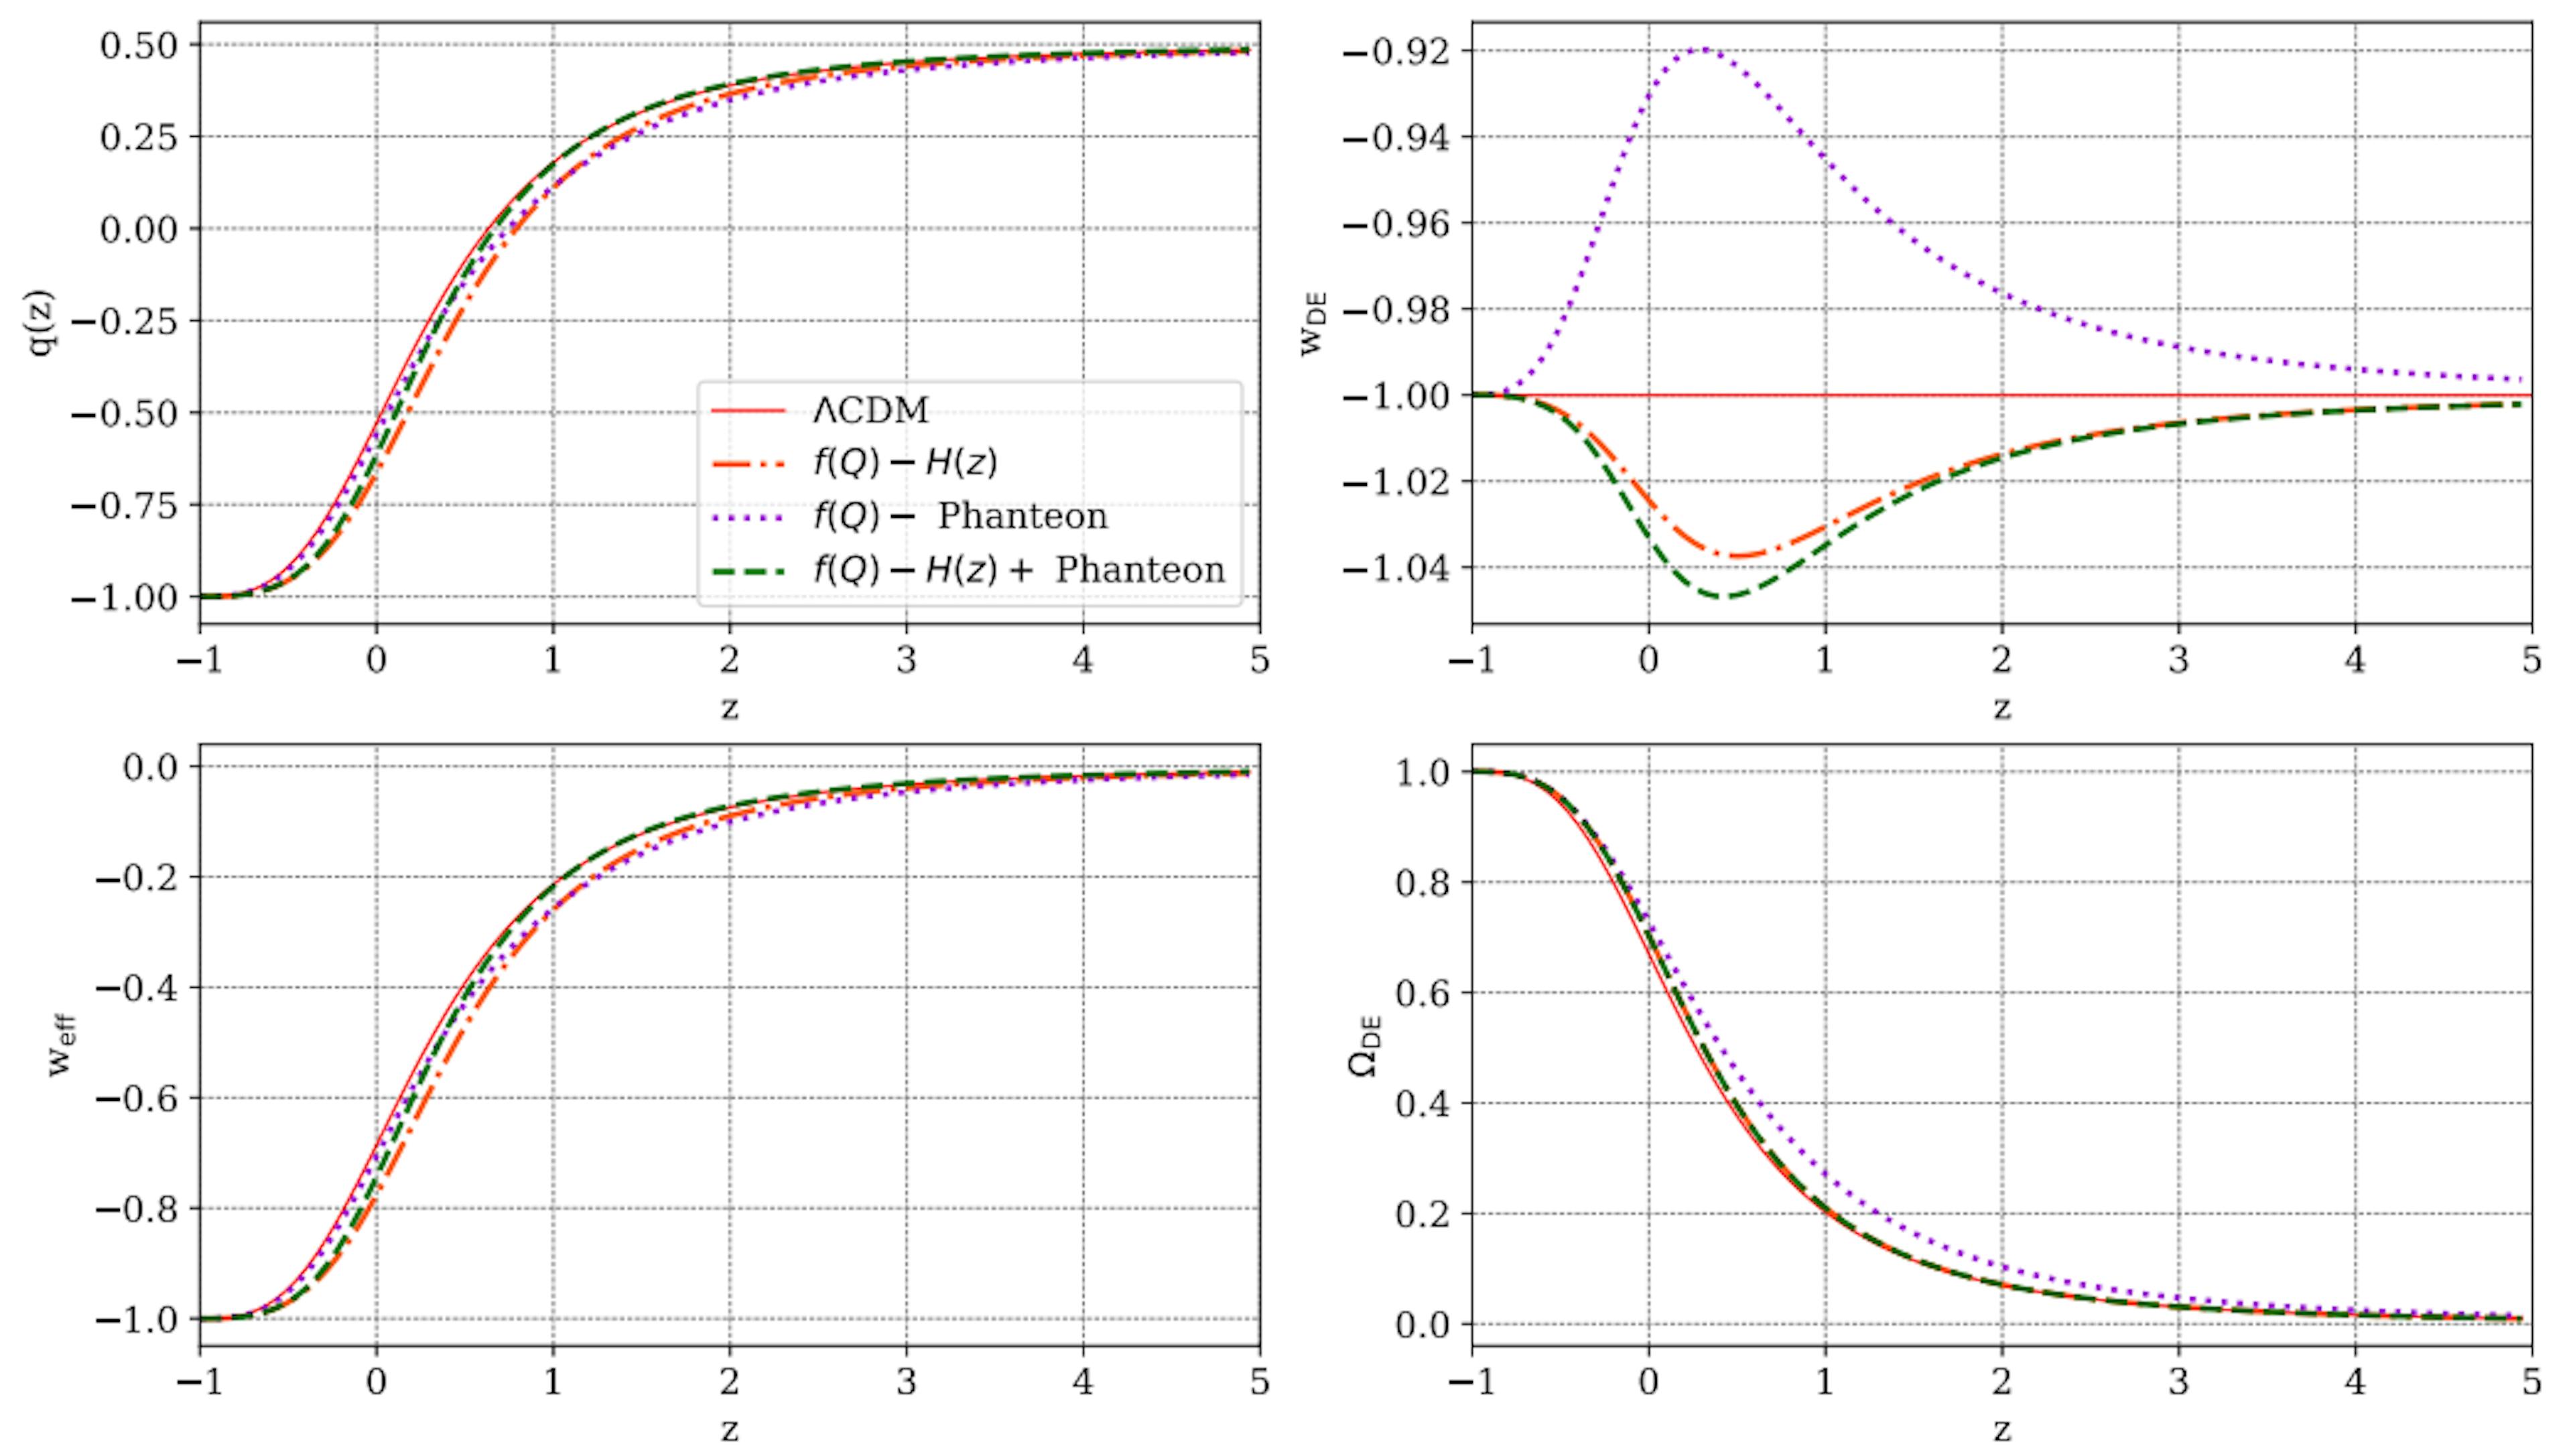 Figure 7 : Evolution de certains paramètres cosmologiques par rapport au redshift, z, tel que prédit pour le modèle f(Q) présenté dans ce travail, par rapport aux prédictions ΛCDM (ligne rouge pleine). Dans chaque panneau, les lignes pointillées orange, pointillées violettes et vertes pointillées sont le résultat des contraintes paramétriques des échantillons H(z), Panthéon et H(z)+ Panthéon, respectivement.